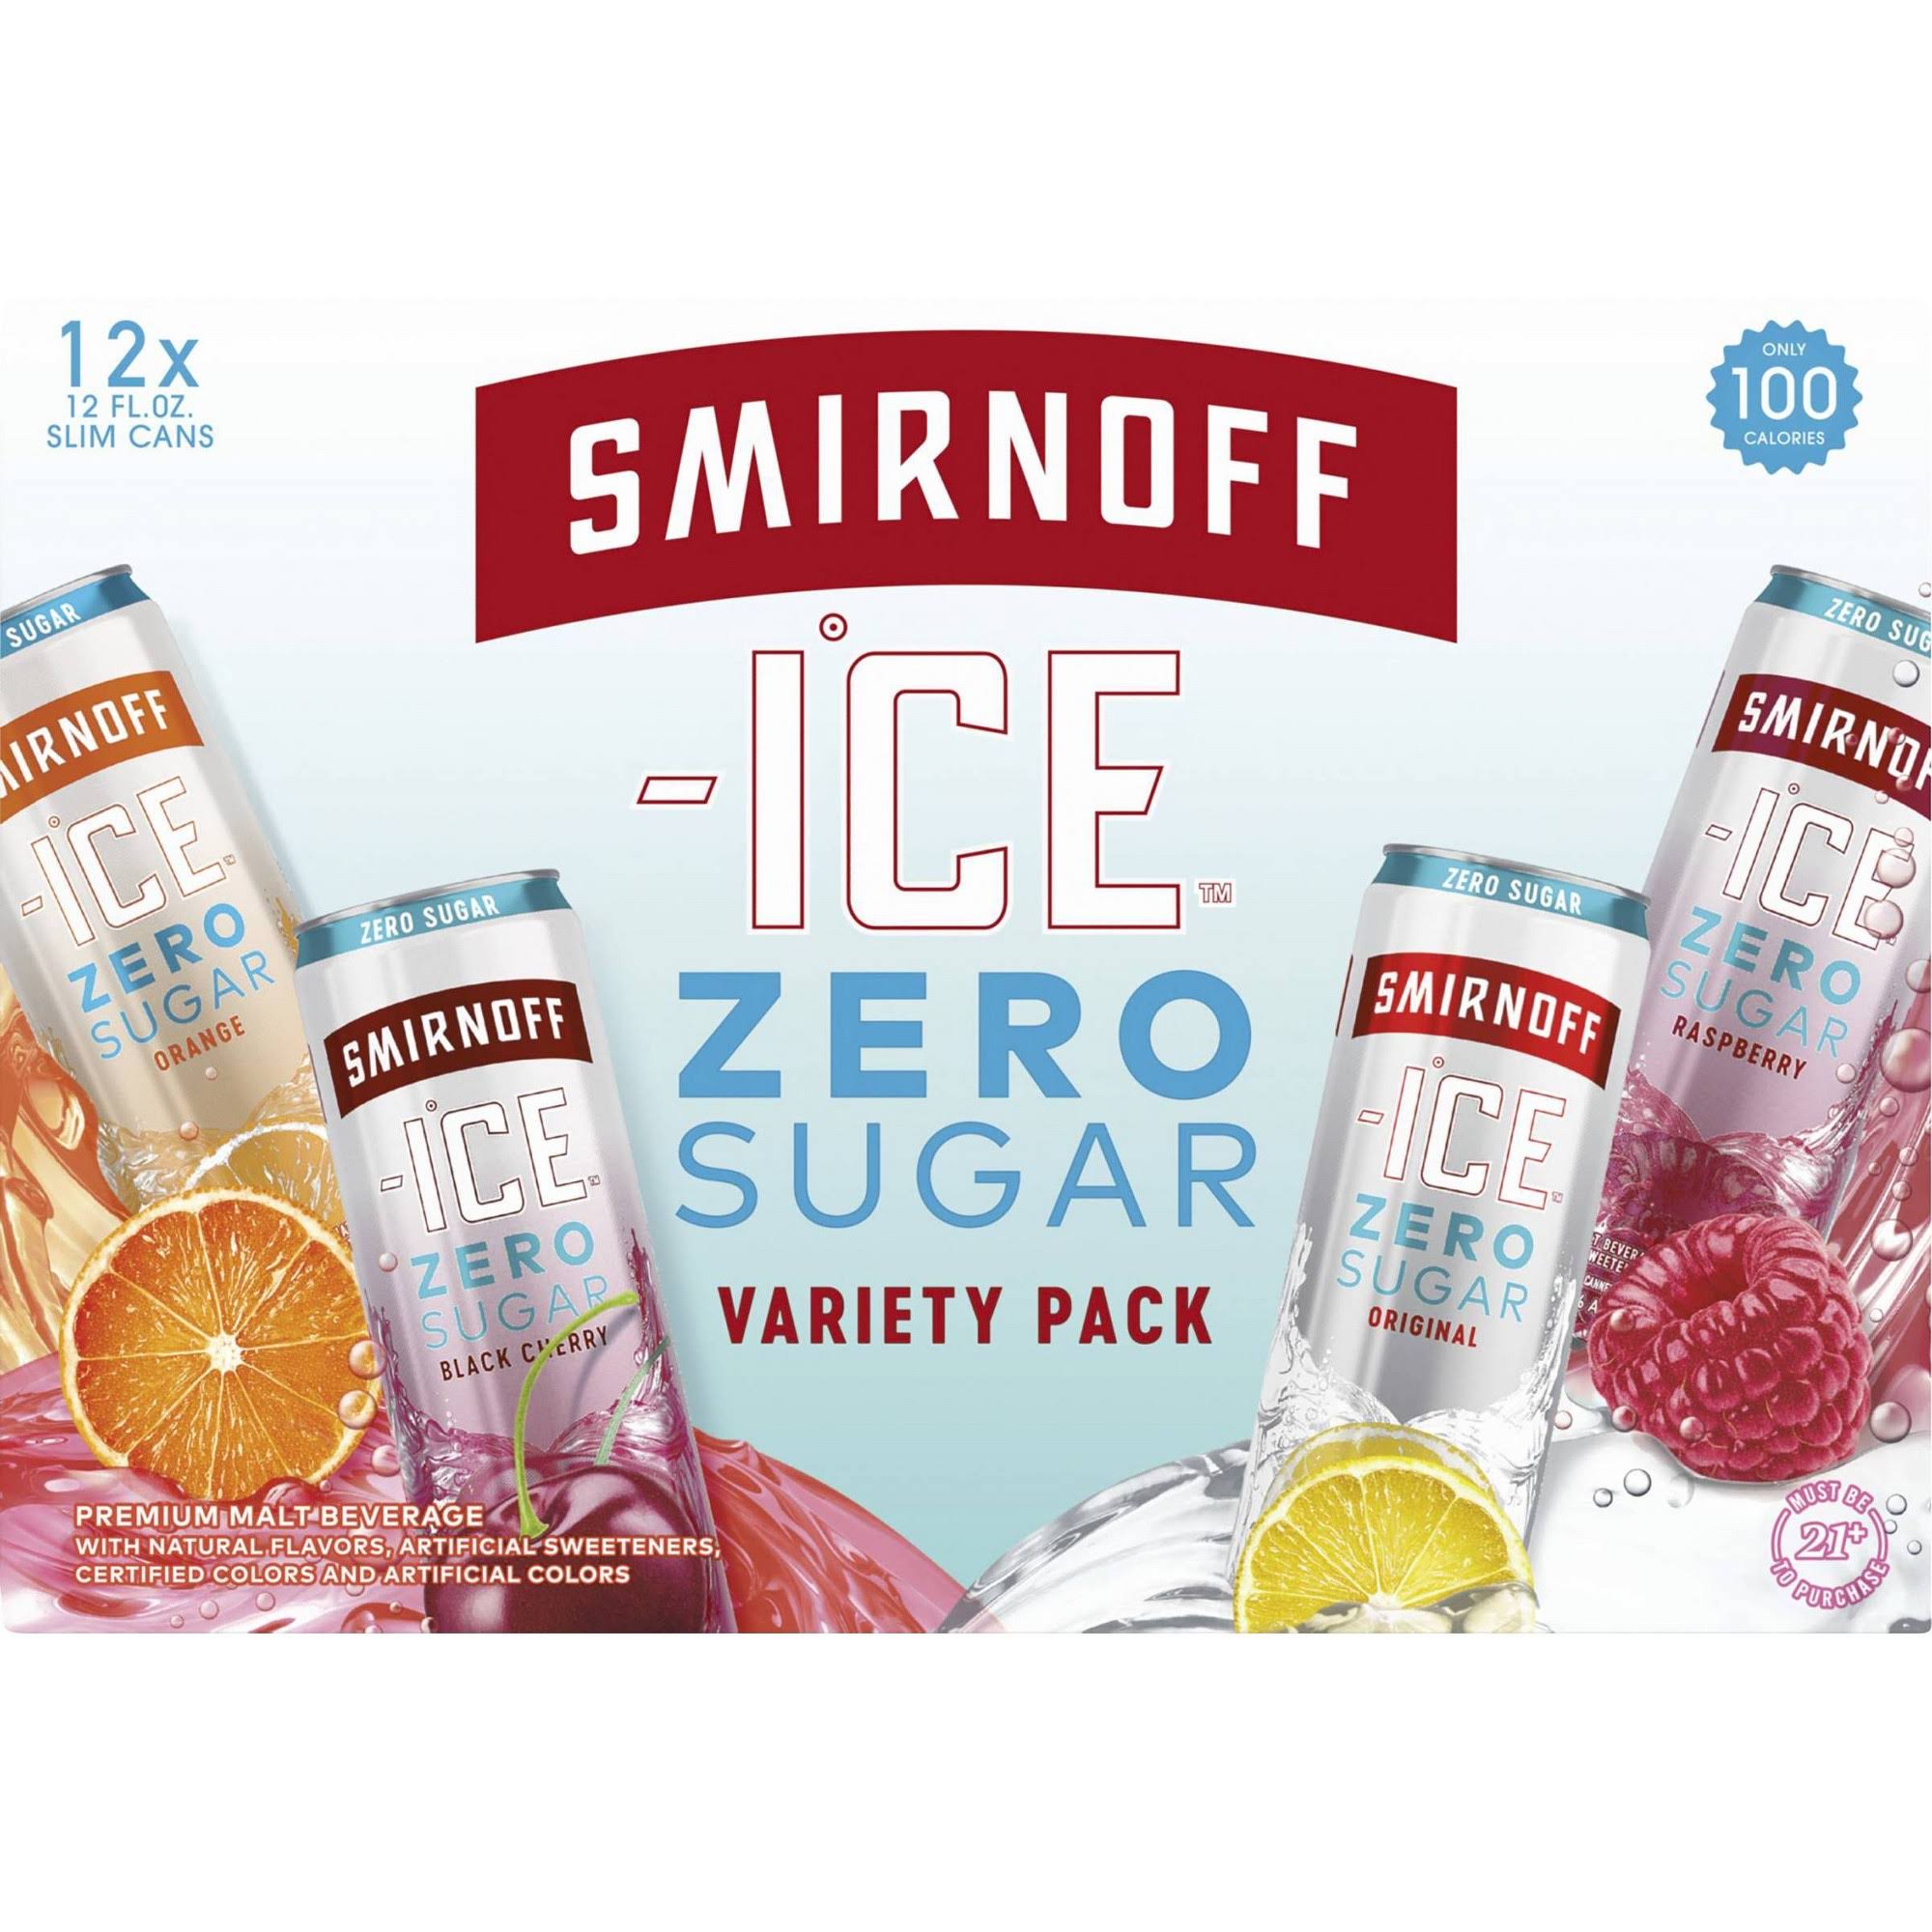 Smirnoff Ice Malt Beverage, Premium, Zero Sugar, Variety Pack - 12 pack, 12 fl oz slim cans